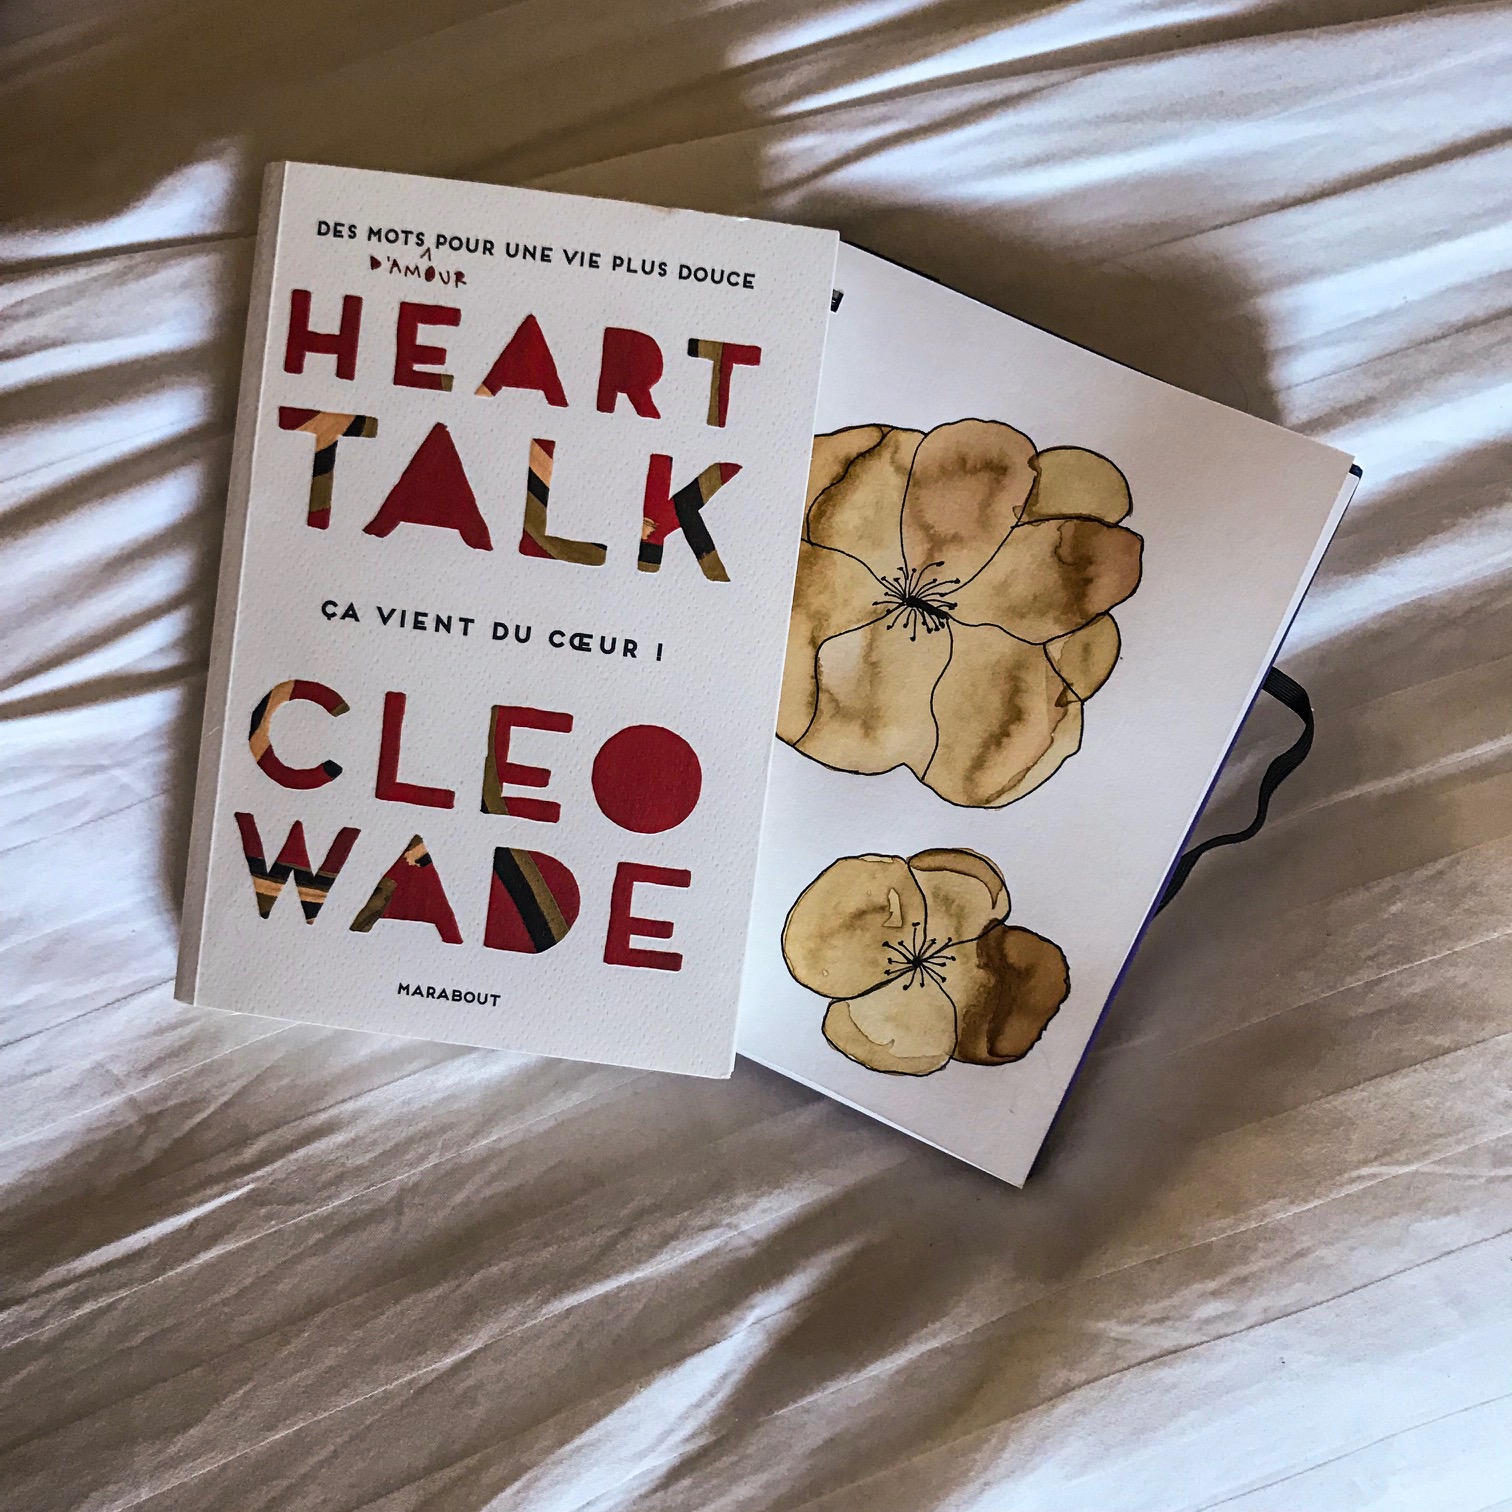 Heart talk, ça vient du cœur de Cleo Wade : des mots d'amour pour une vie plus douce